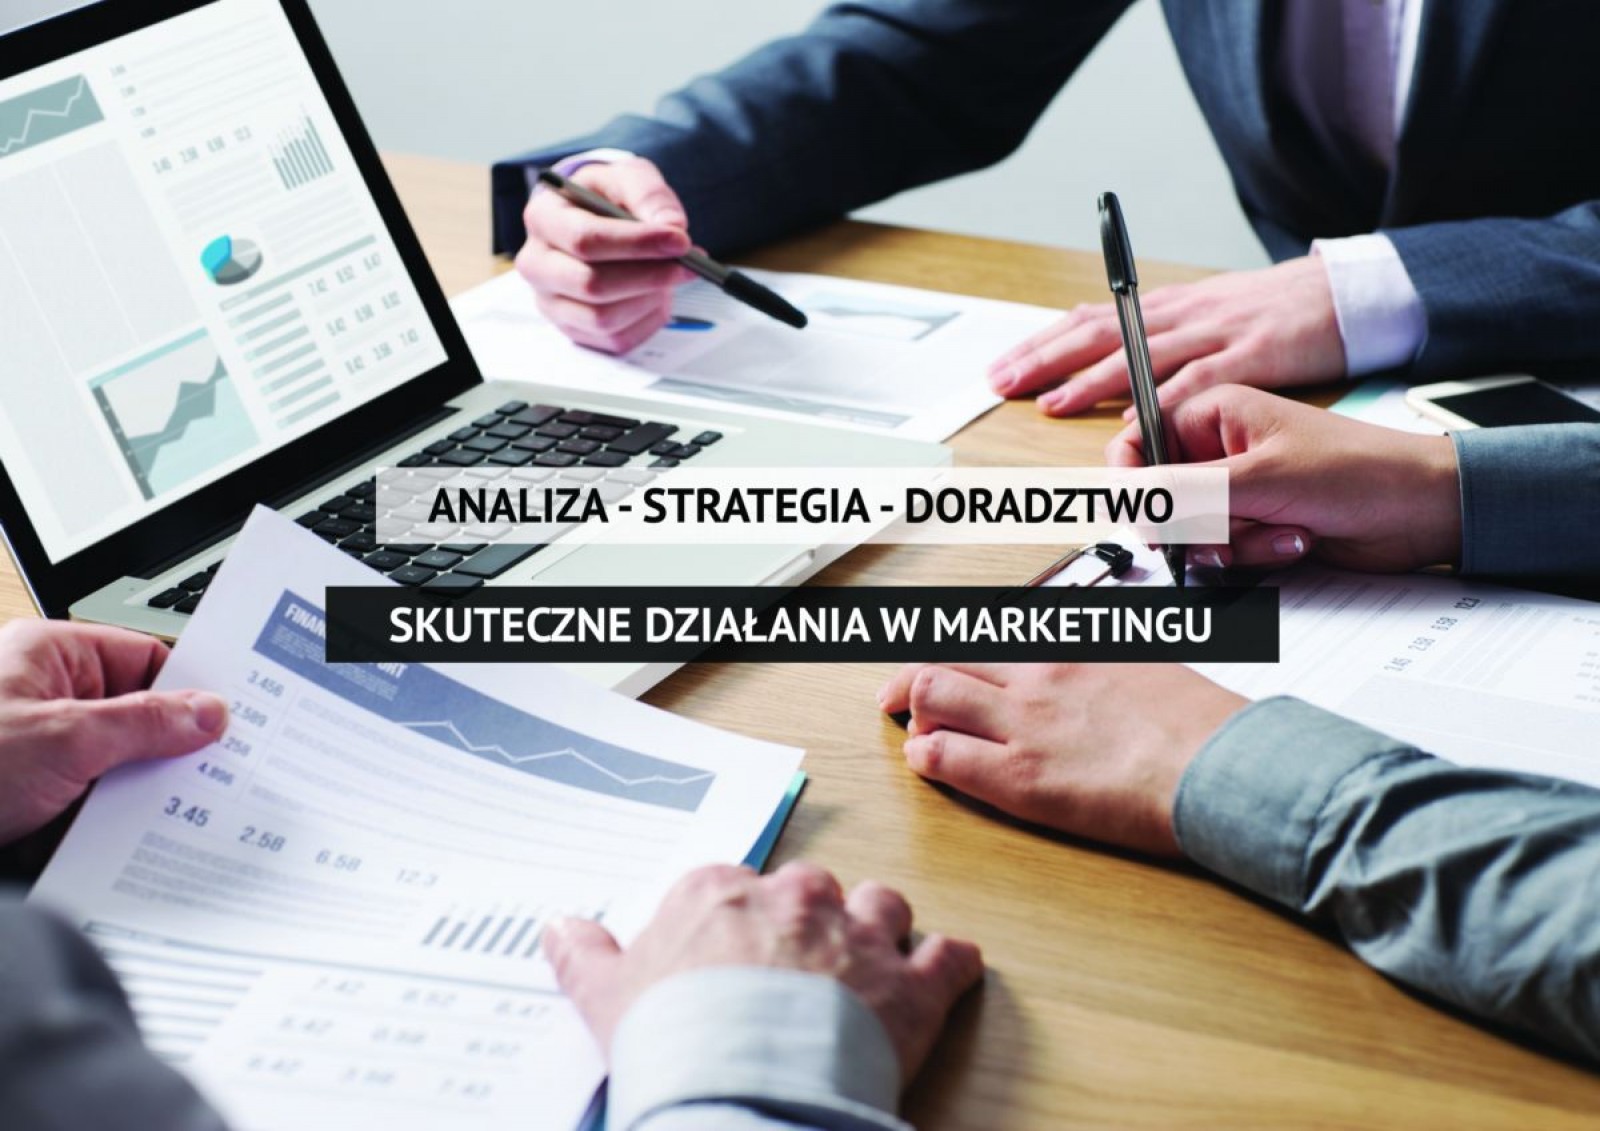 dzialania_marketingowe_analiza_strategia_doradztwo_biznesowe_wirtualny_marketing